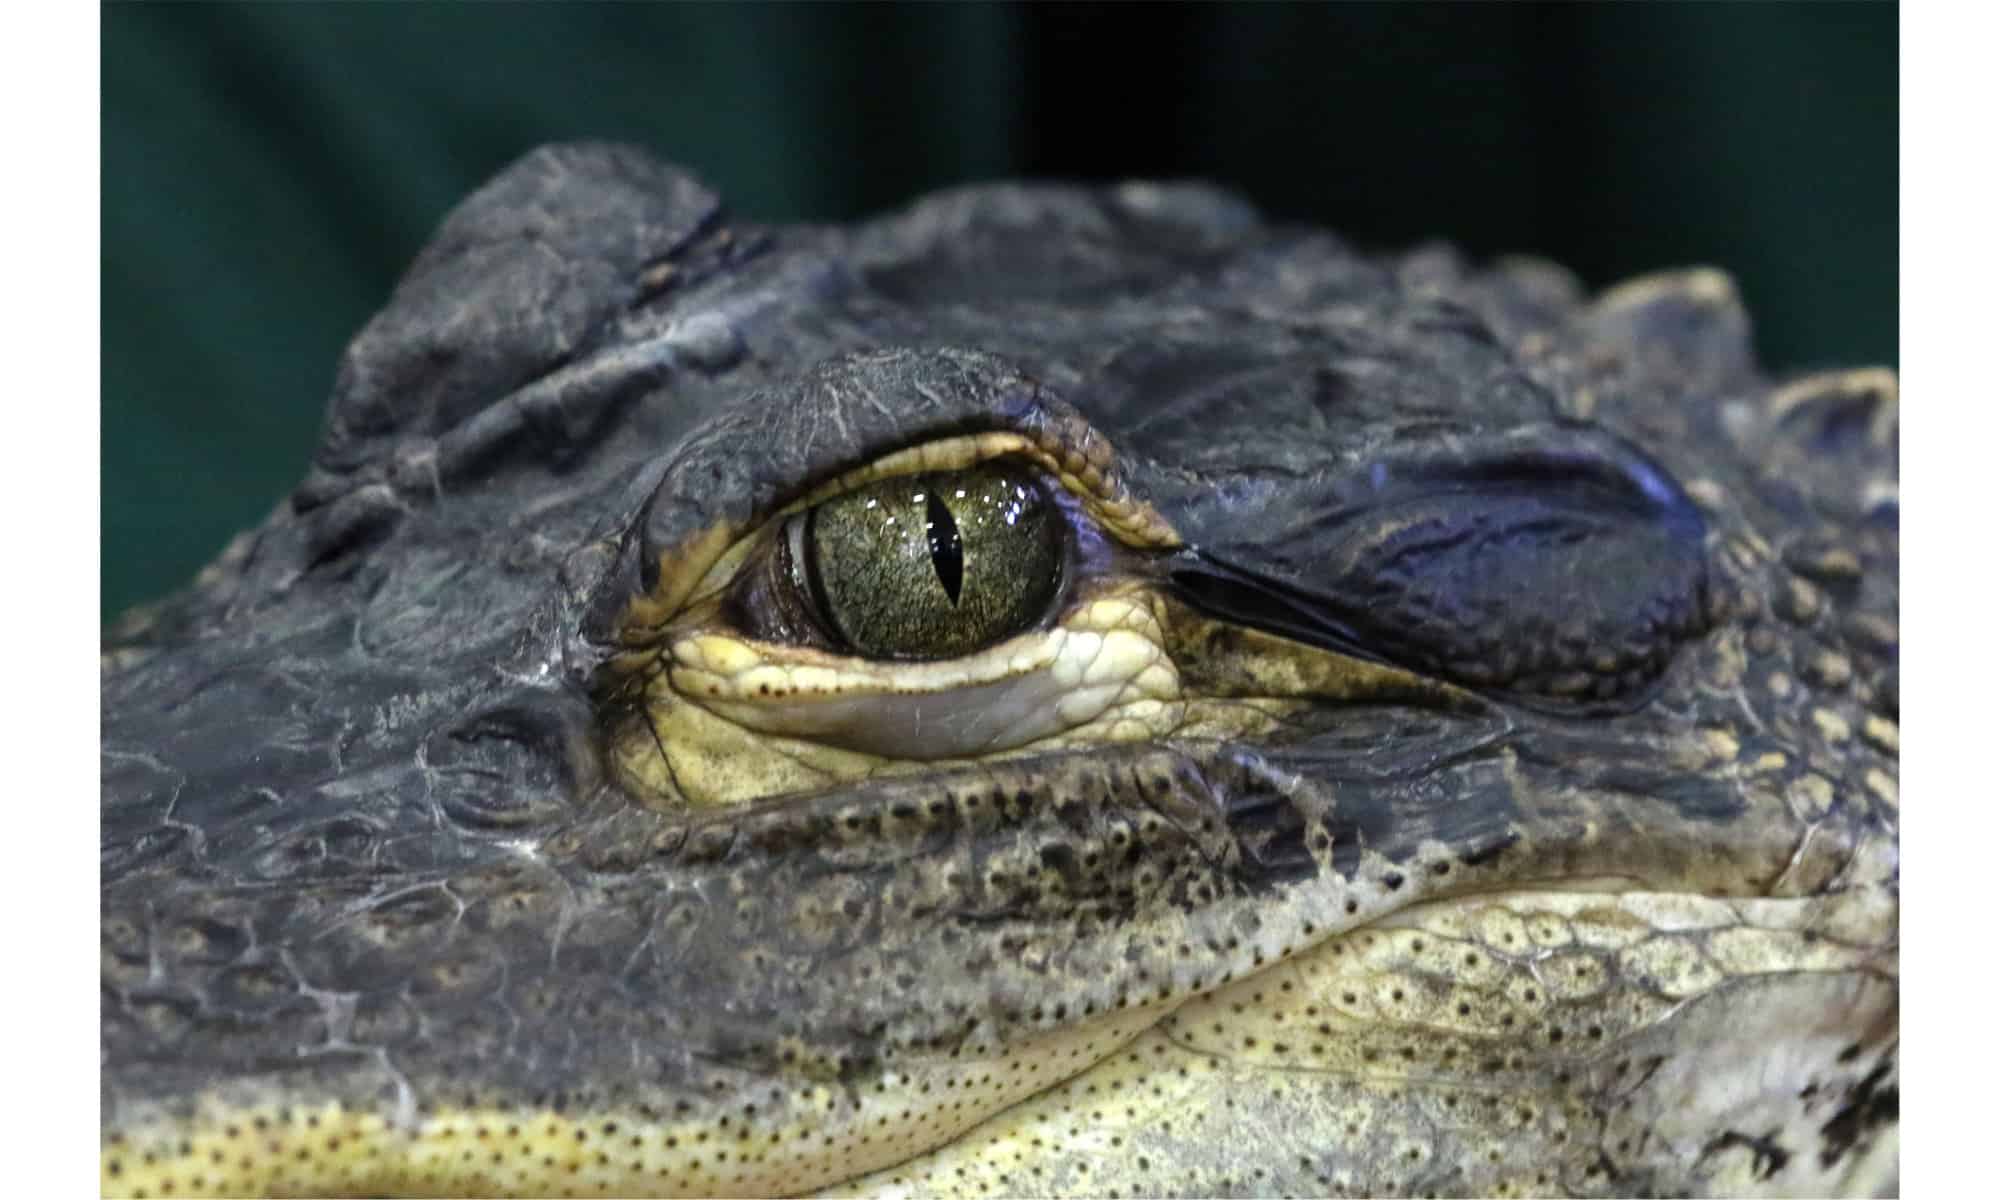 Closeup of an alligator's eye